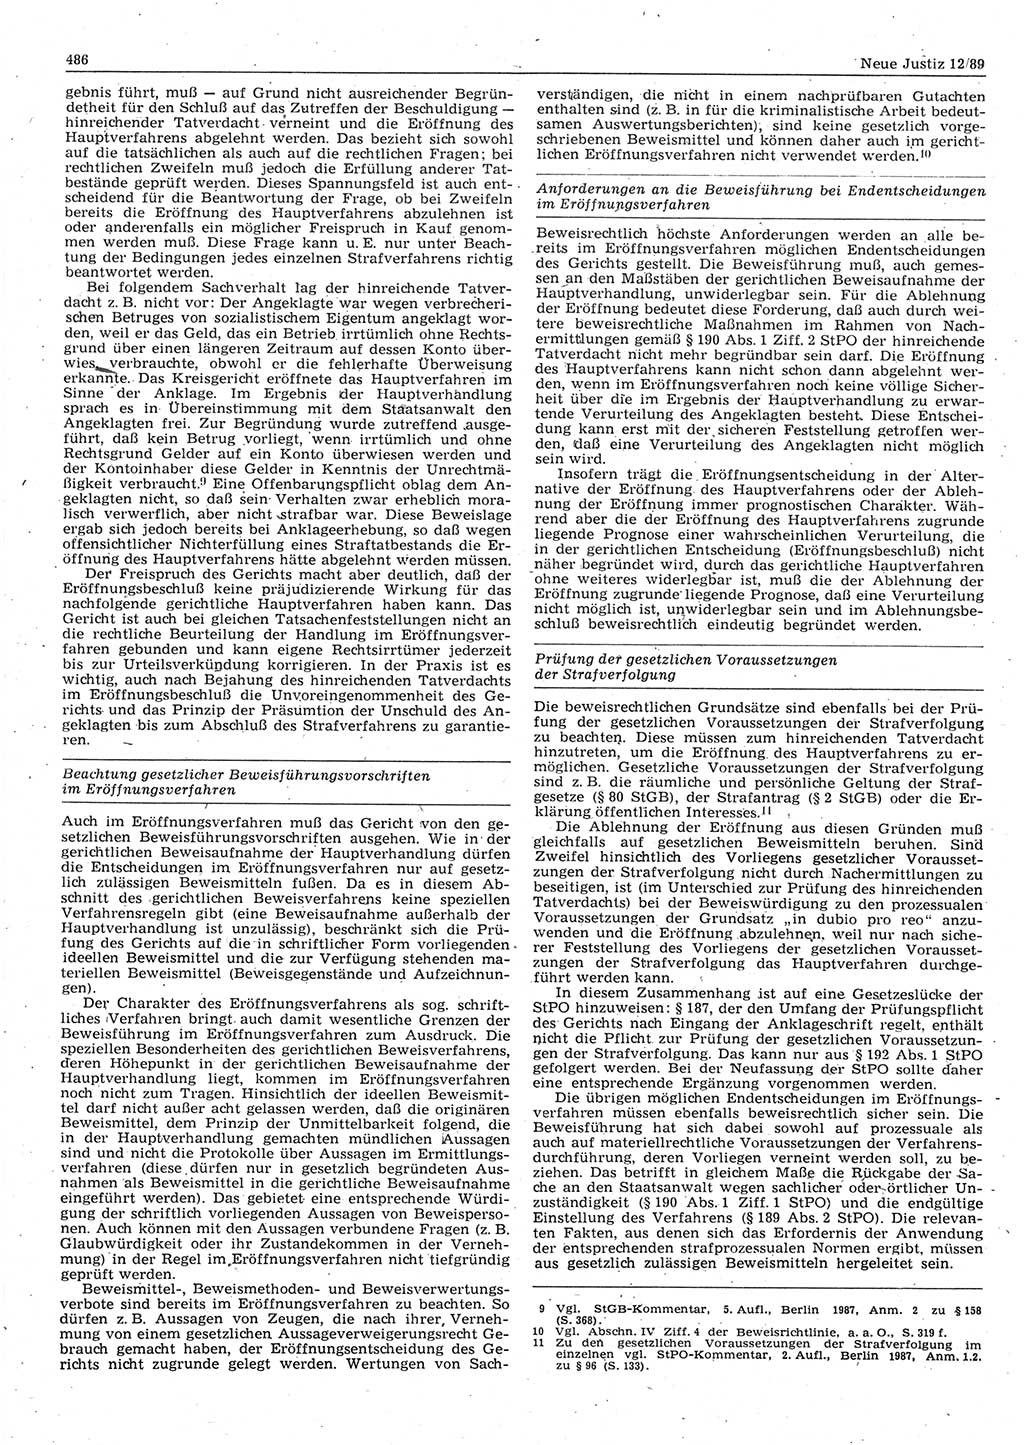 Neue Justiz (NJ), Zeitschrift für sozialistisches Recht und Gesetzlichkeit [Deutsche Demokratische Republik (DDR)], 43. Jahrgang 1989, Seite 486 (NJ DDR 1989, S. 486)